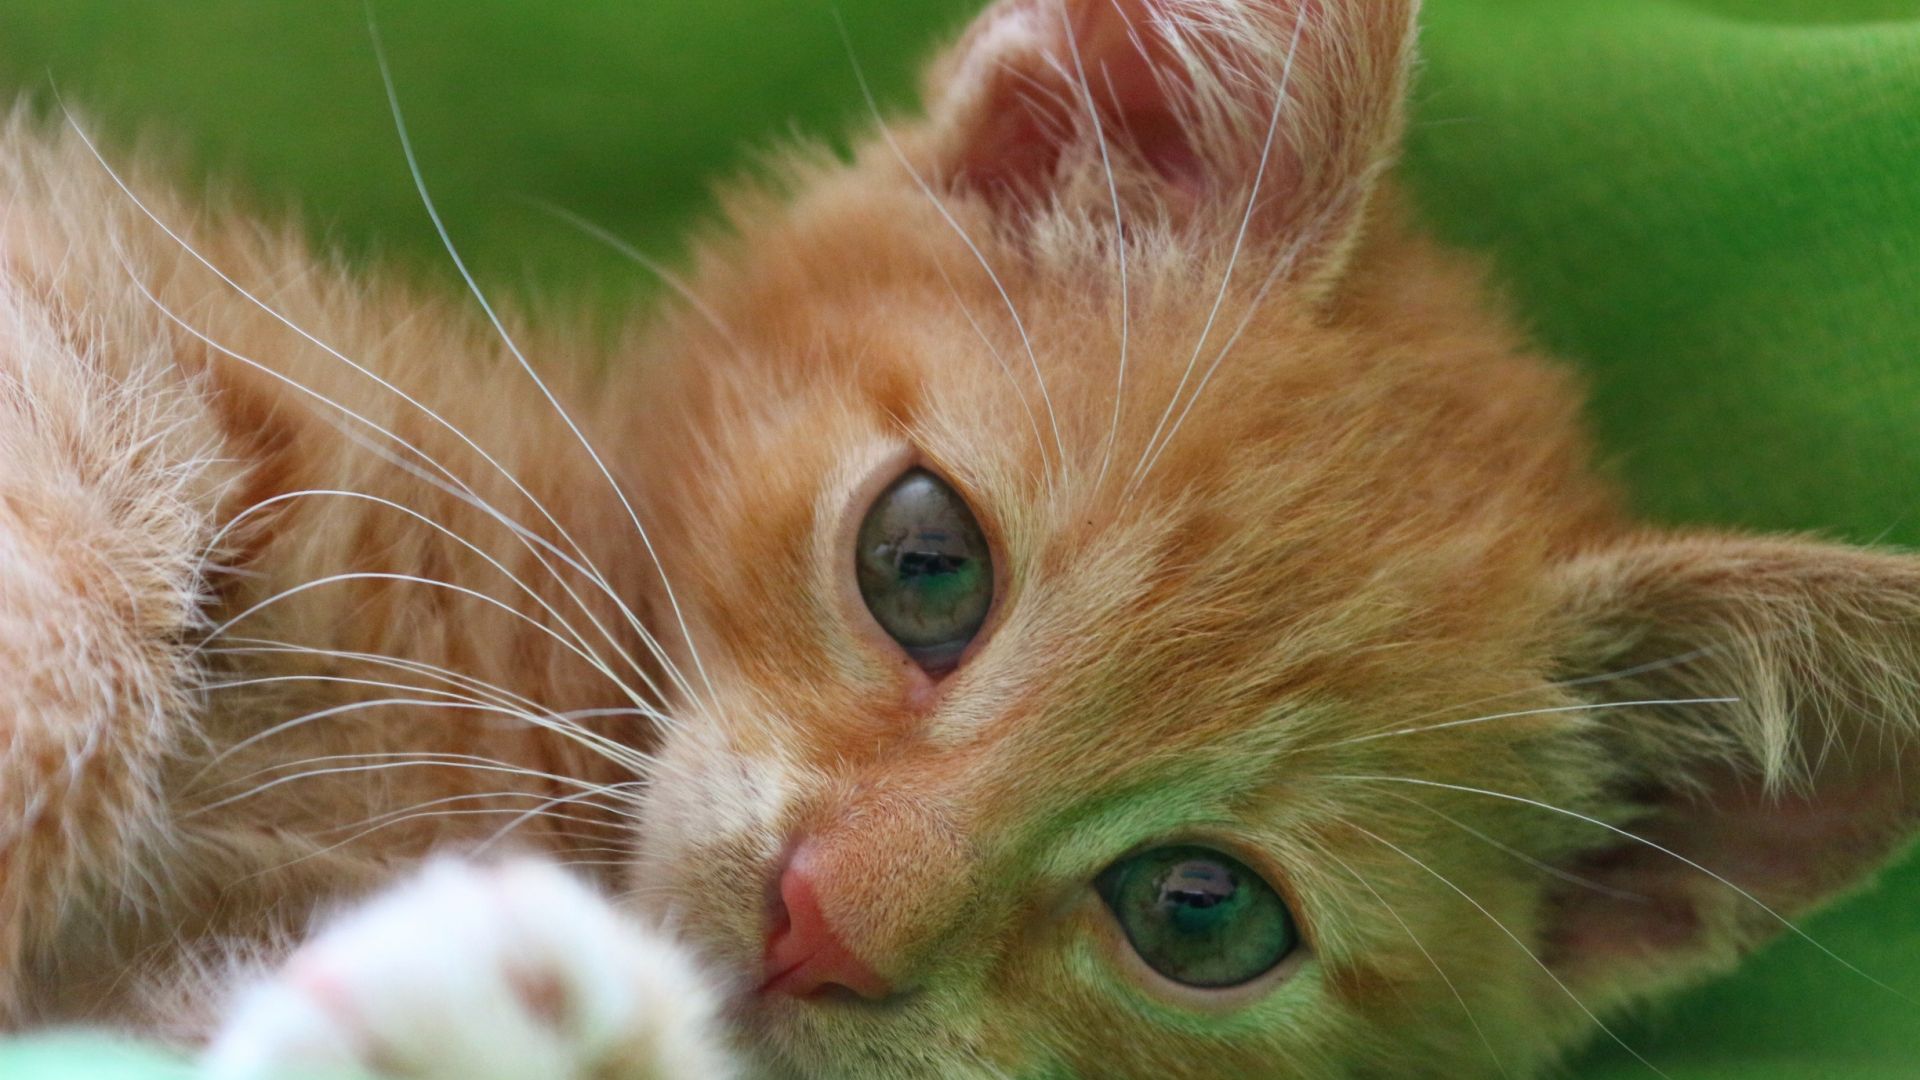 Cats pats. Orange Kitty. Оранжевый табби кошка. Pat the Cat. Рыжая кошка с котятами фото на экран.